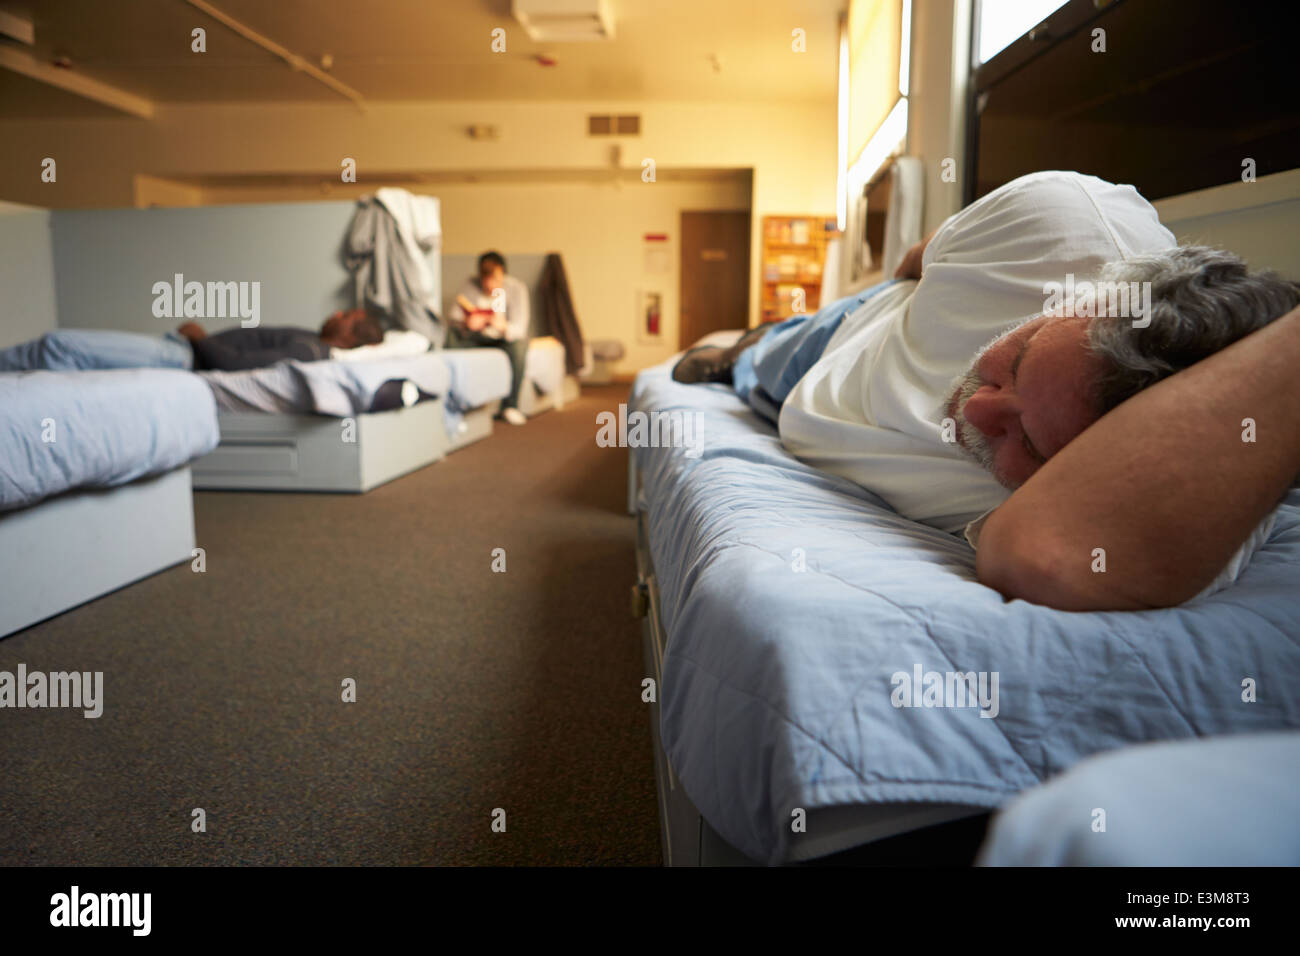 Men Lying On Beds In Homeless Shelter Stock Photo